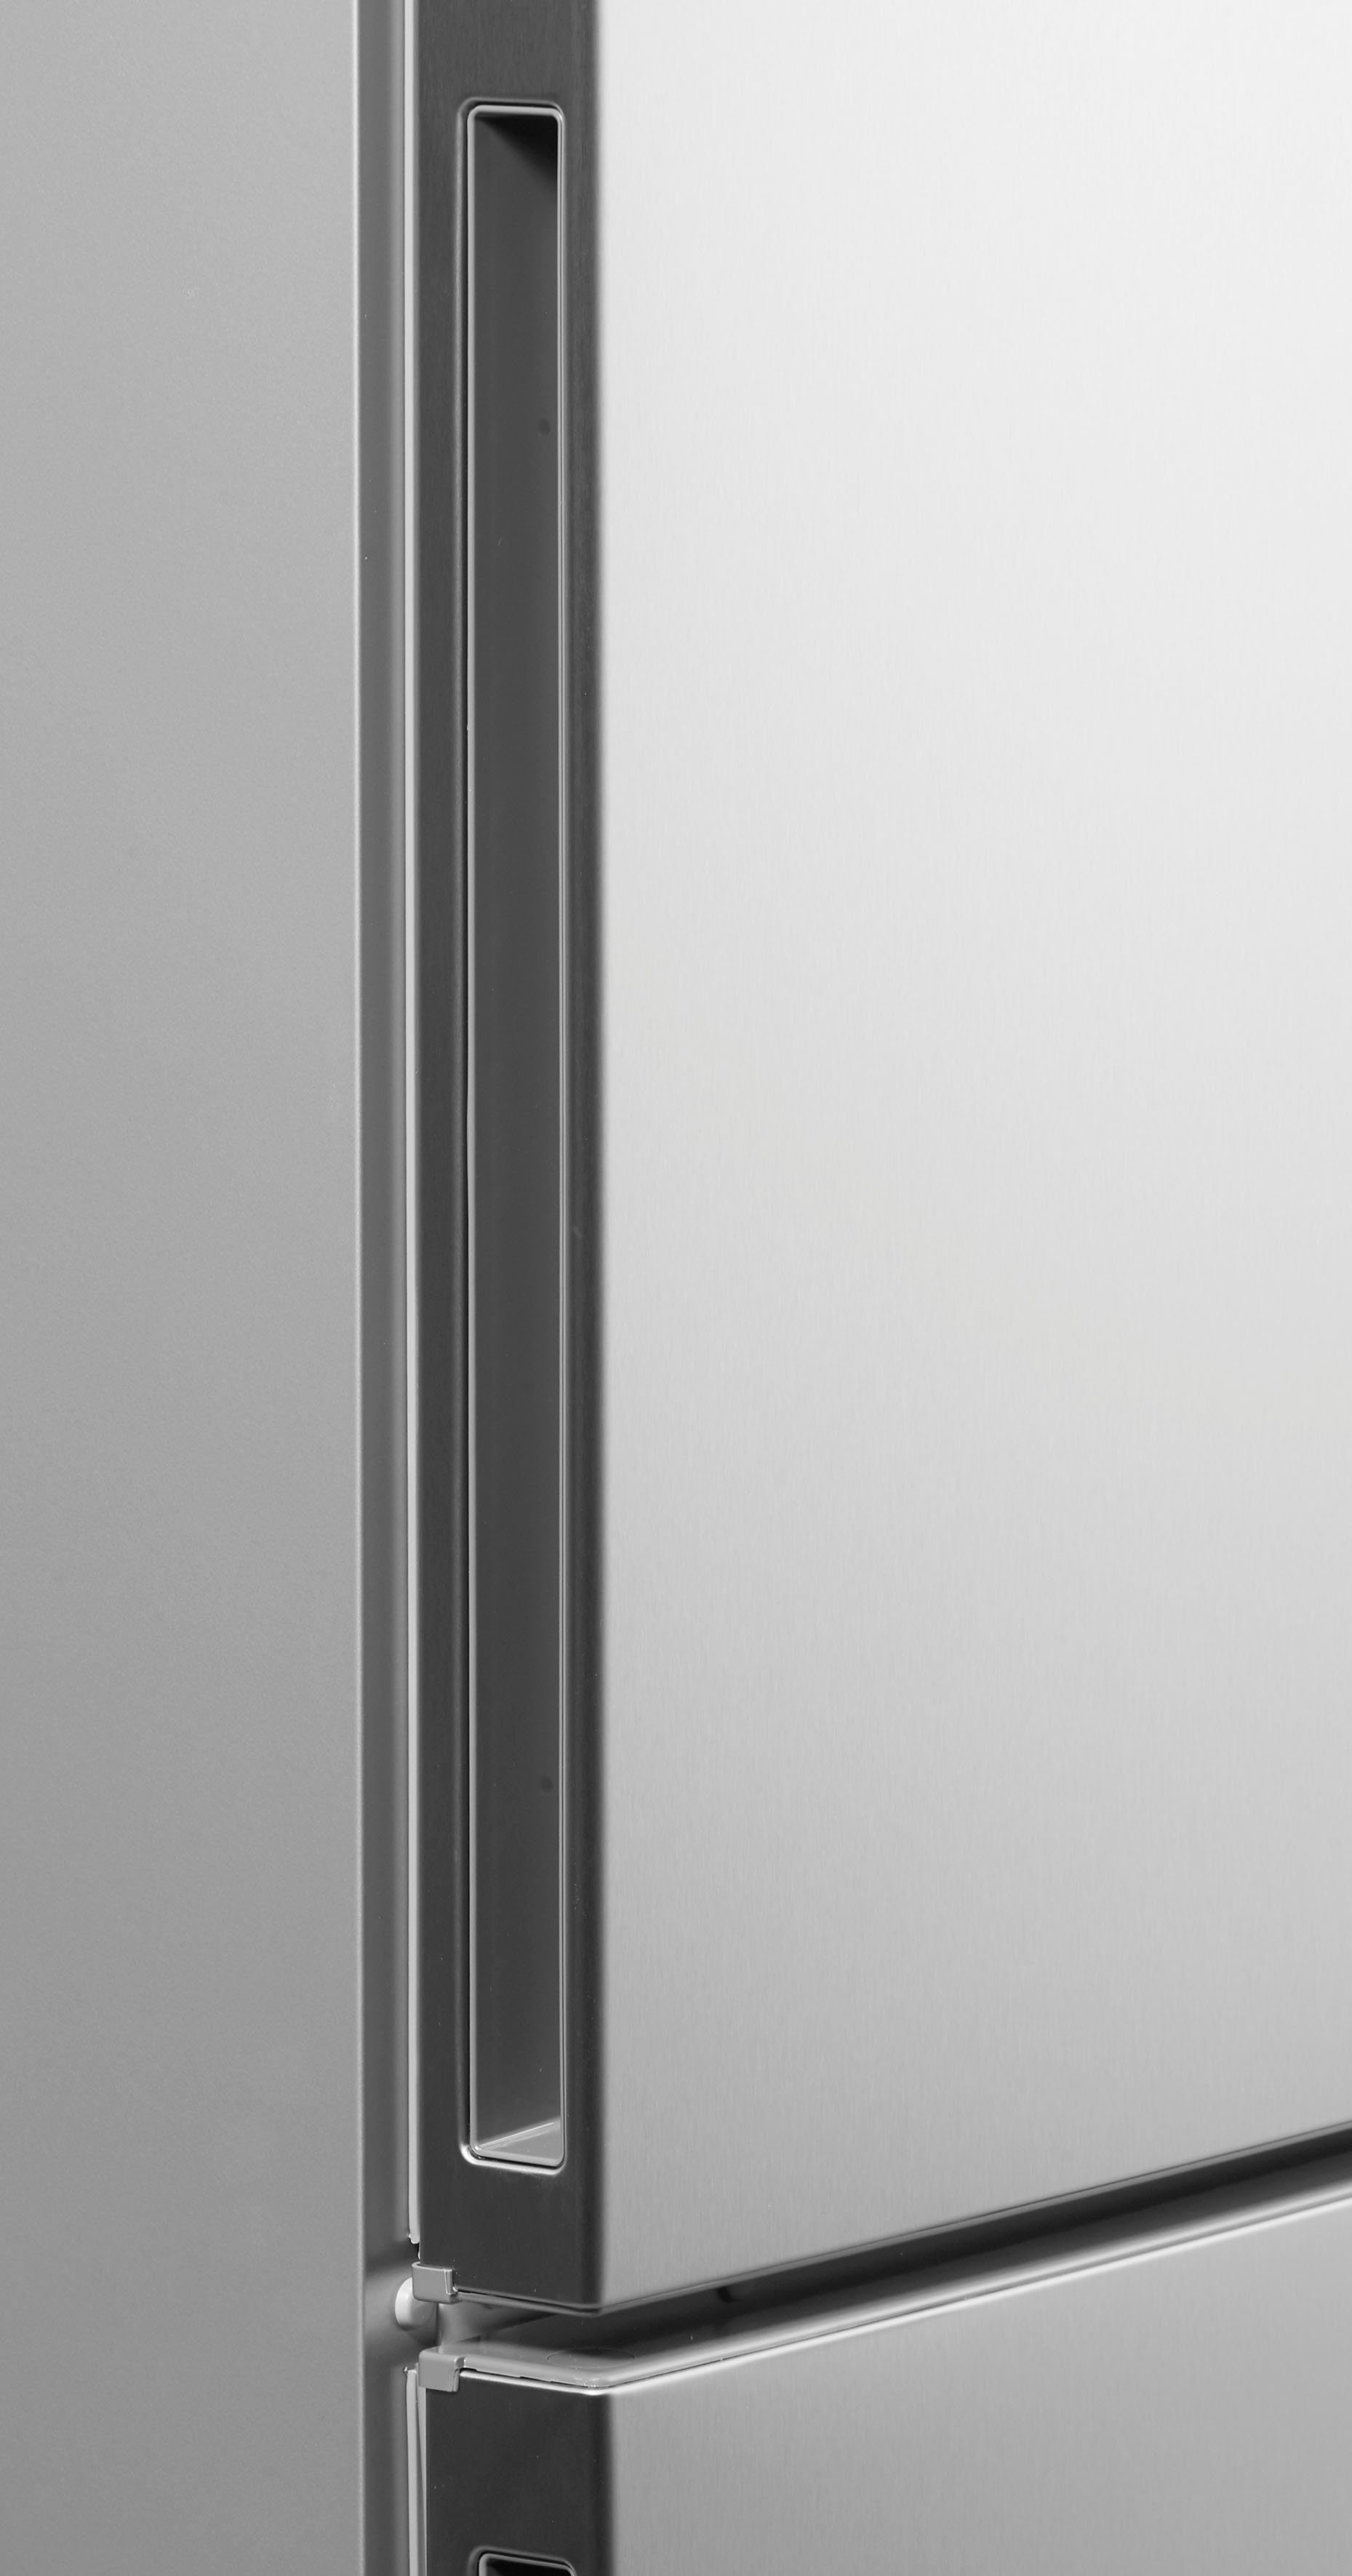 SIEMENS Kühl-/Gefrierkombination KG39EAICA, hoch, breit iQ500 201 cm 60 cm